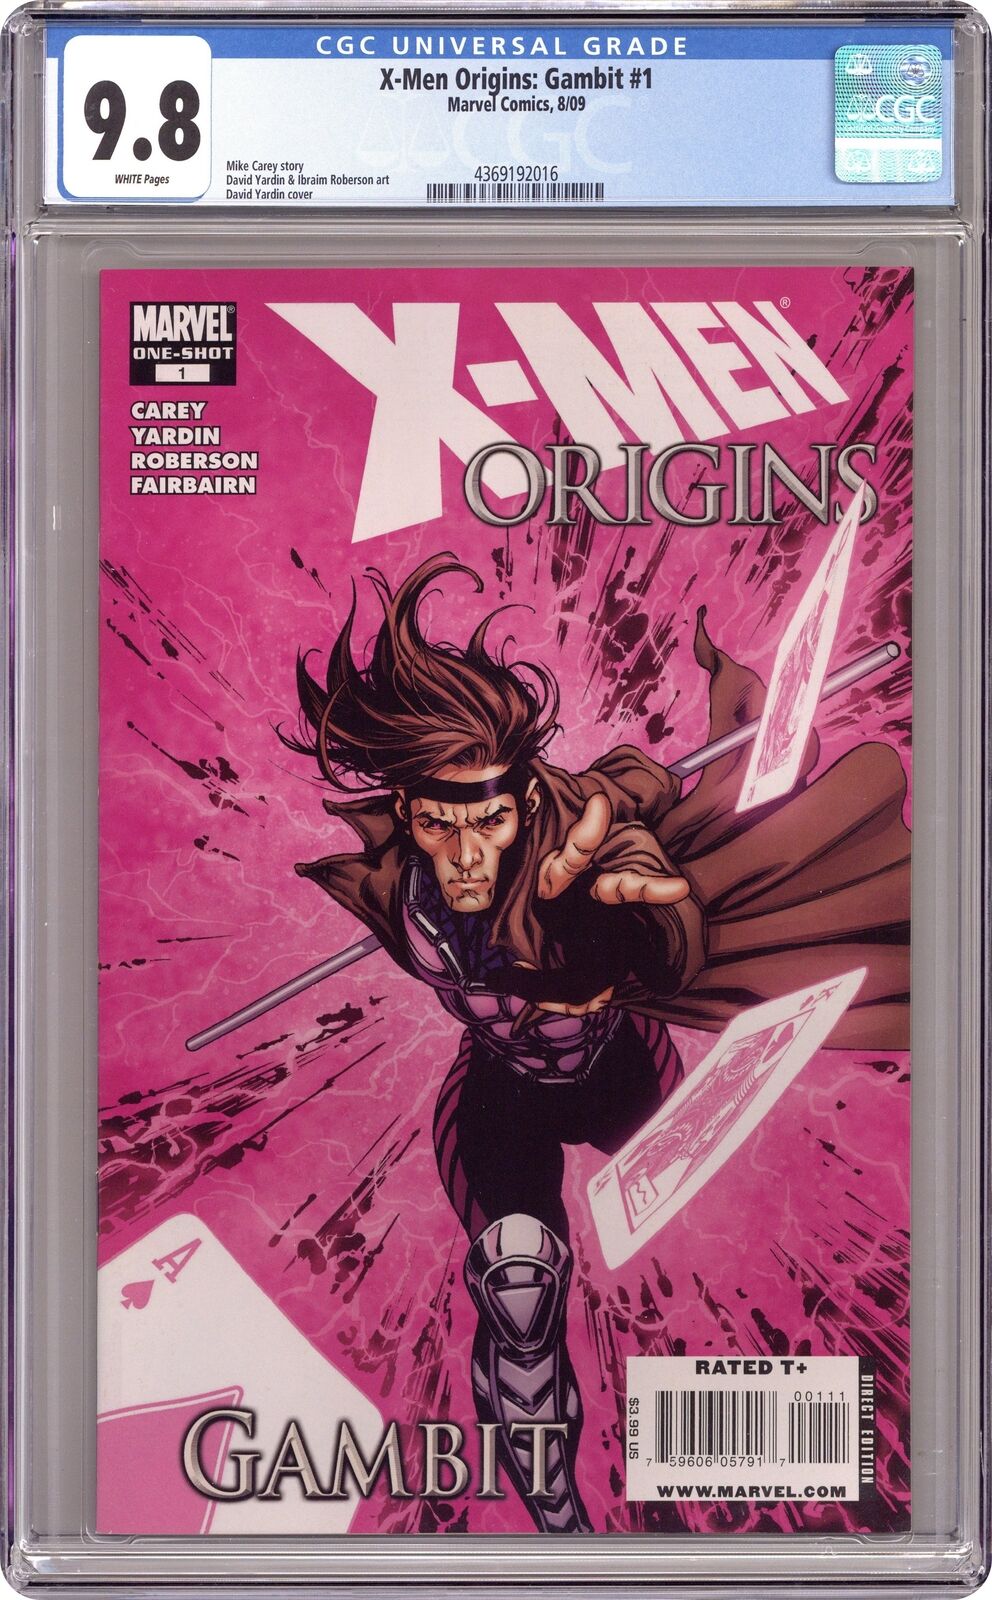 X-Men Origins Gambit #1 CGC 9.8 2008 4369192016